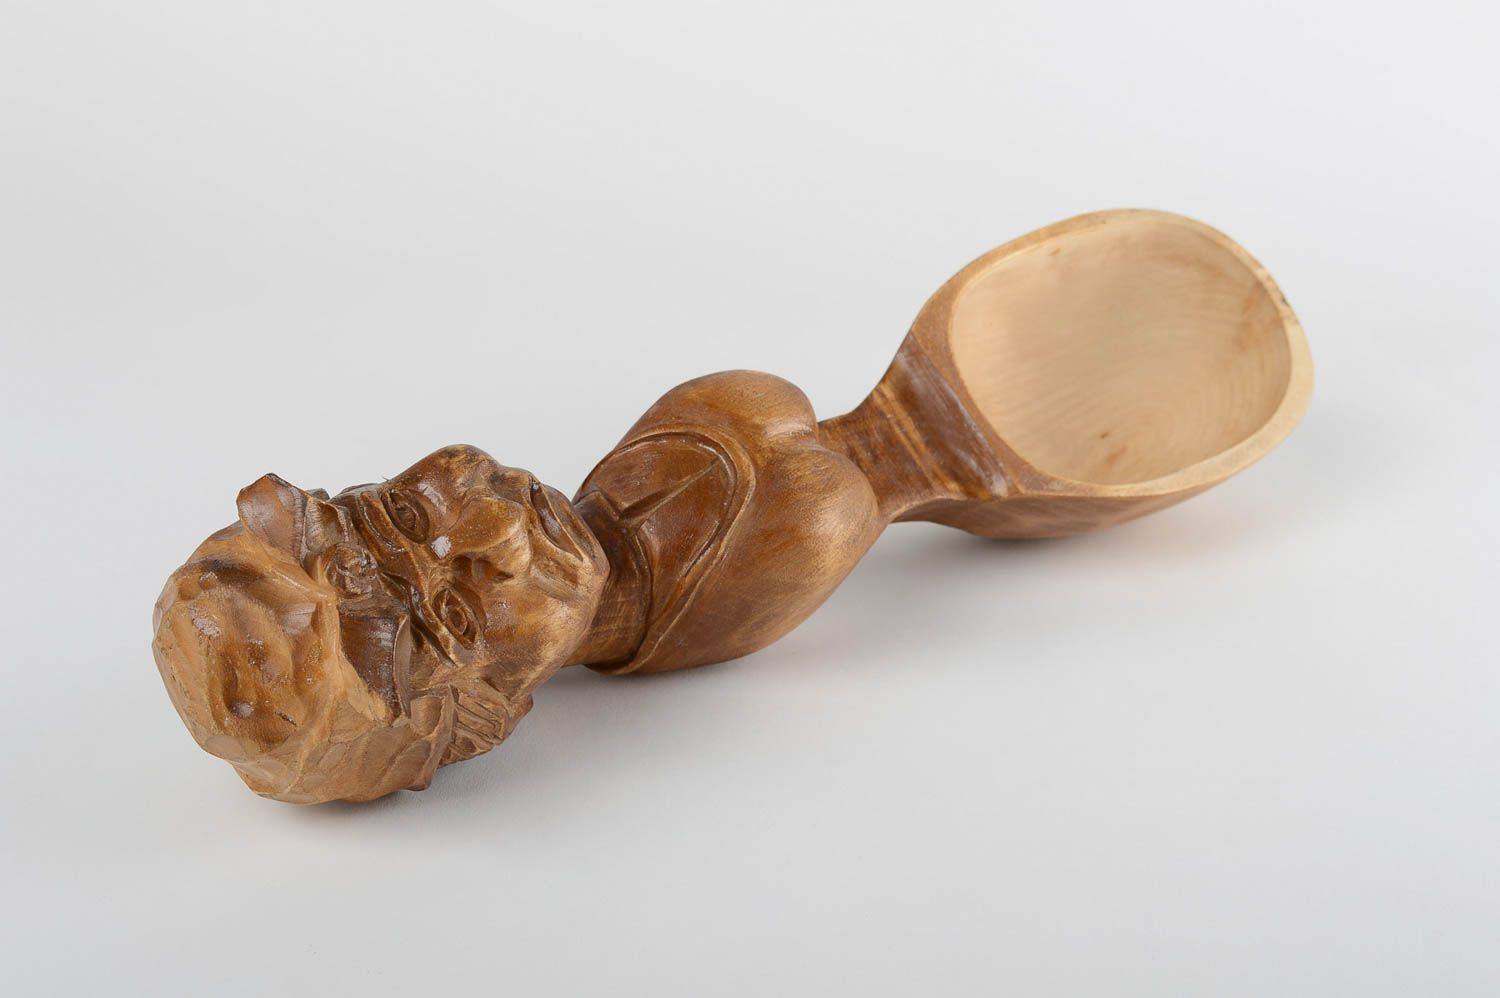 Handmade spoon decorative kitchenware wooden kitchenware interior decoration photo 4